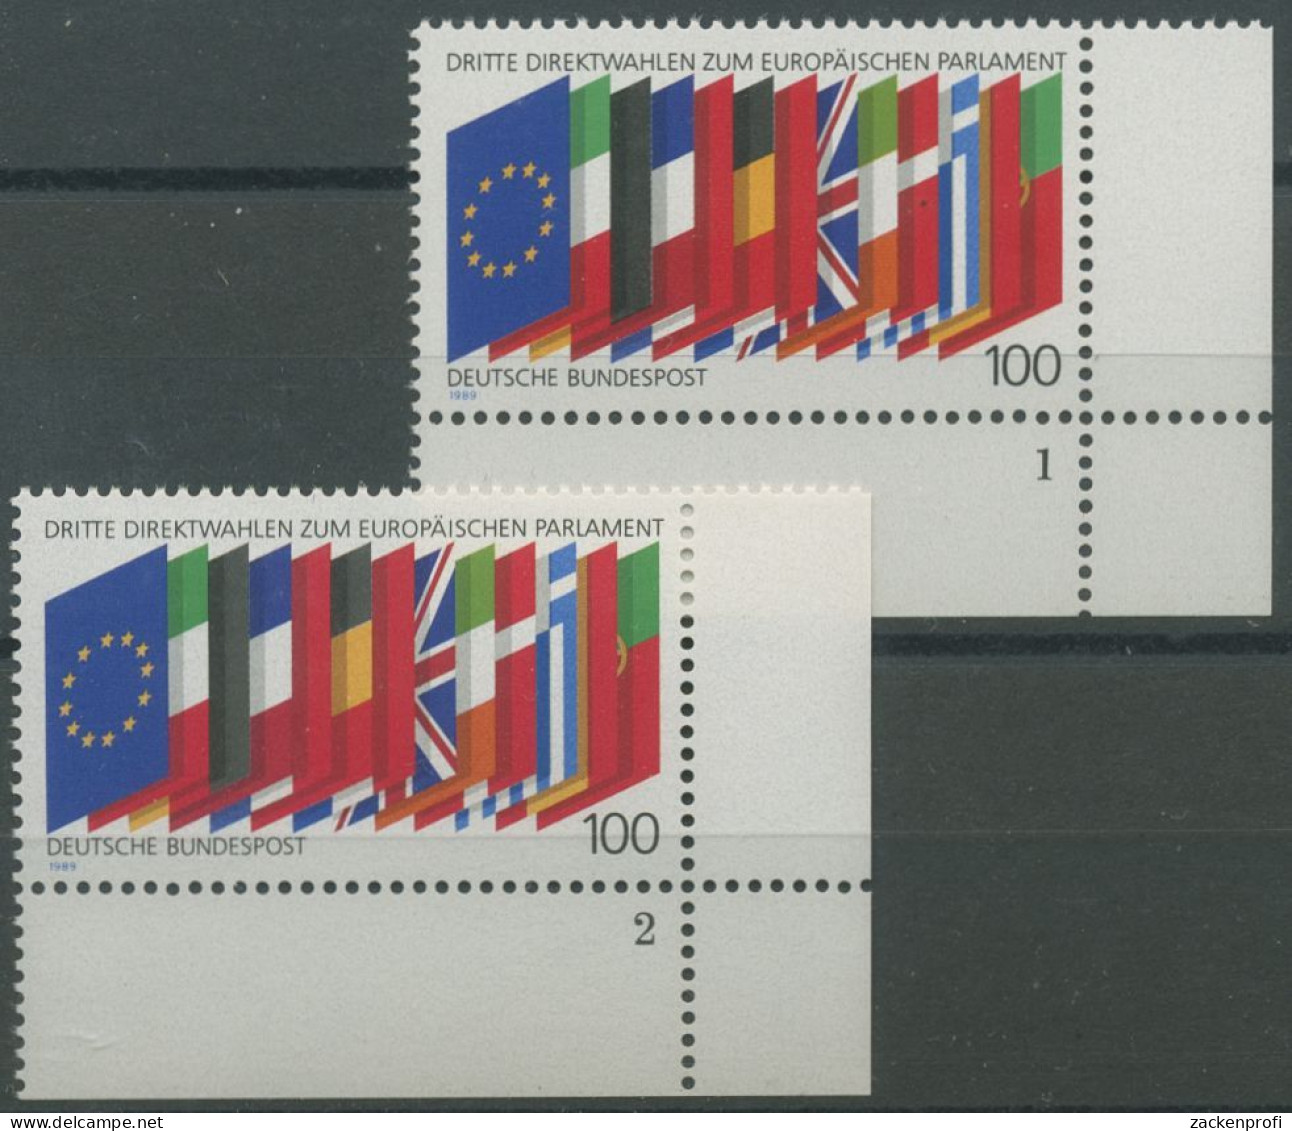 Bund 1989 Direktwahlen Zum Europ. Parlament 1416 Ecke 4 FN 1,2 Postfrisch (E657) - Nuevos